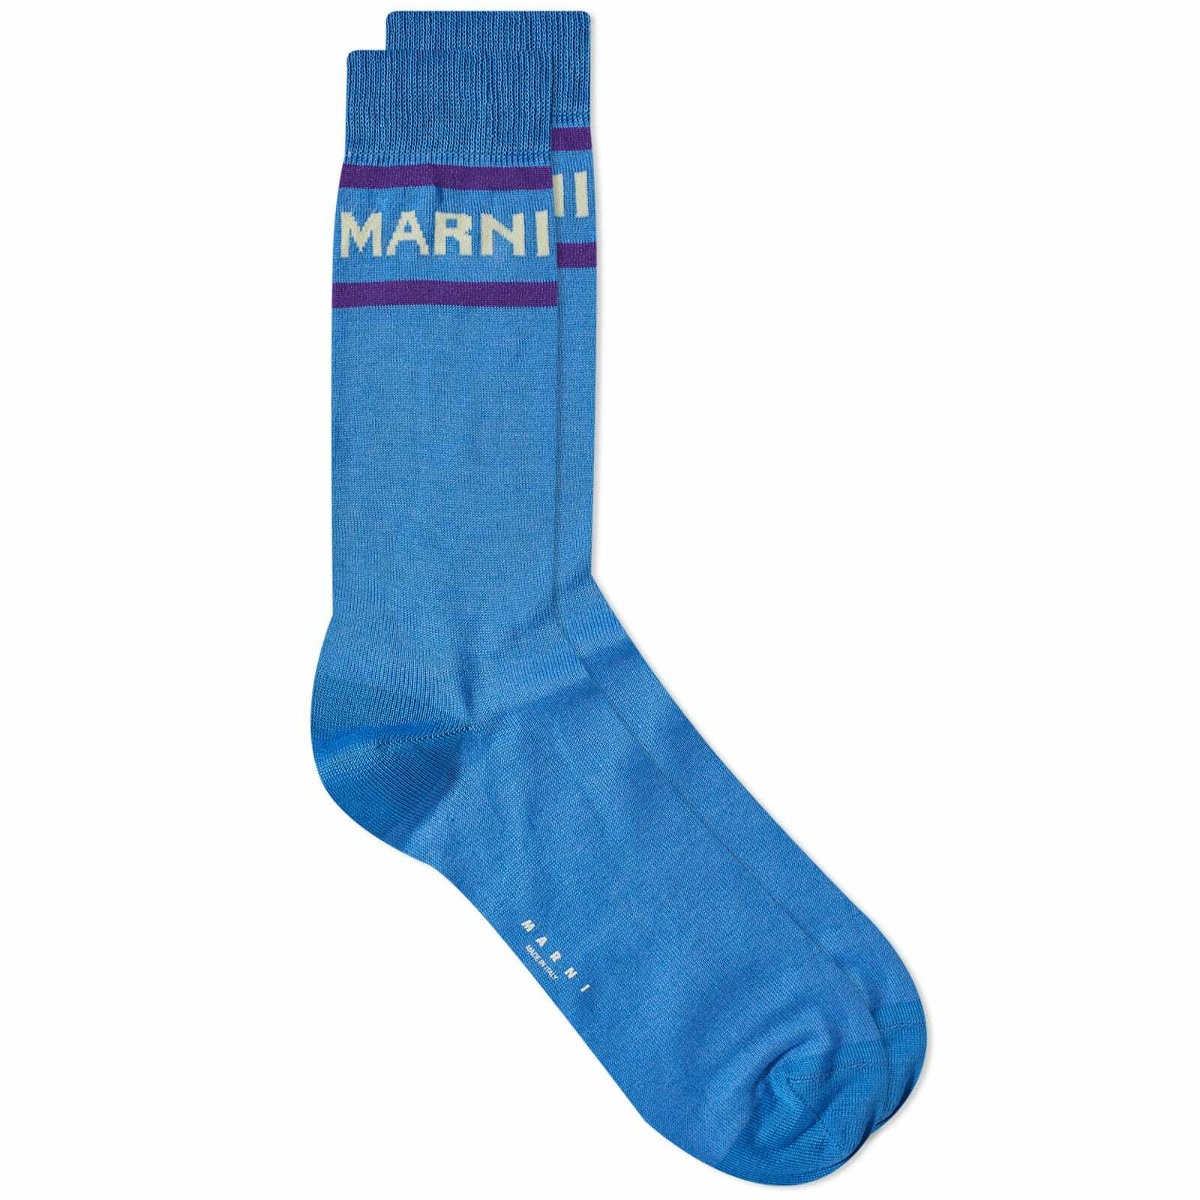 Marni Men's Logo Socks in Cobalt Marni